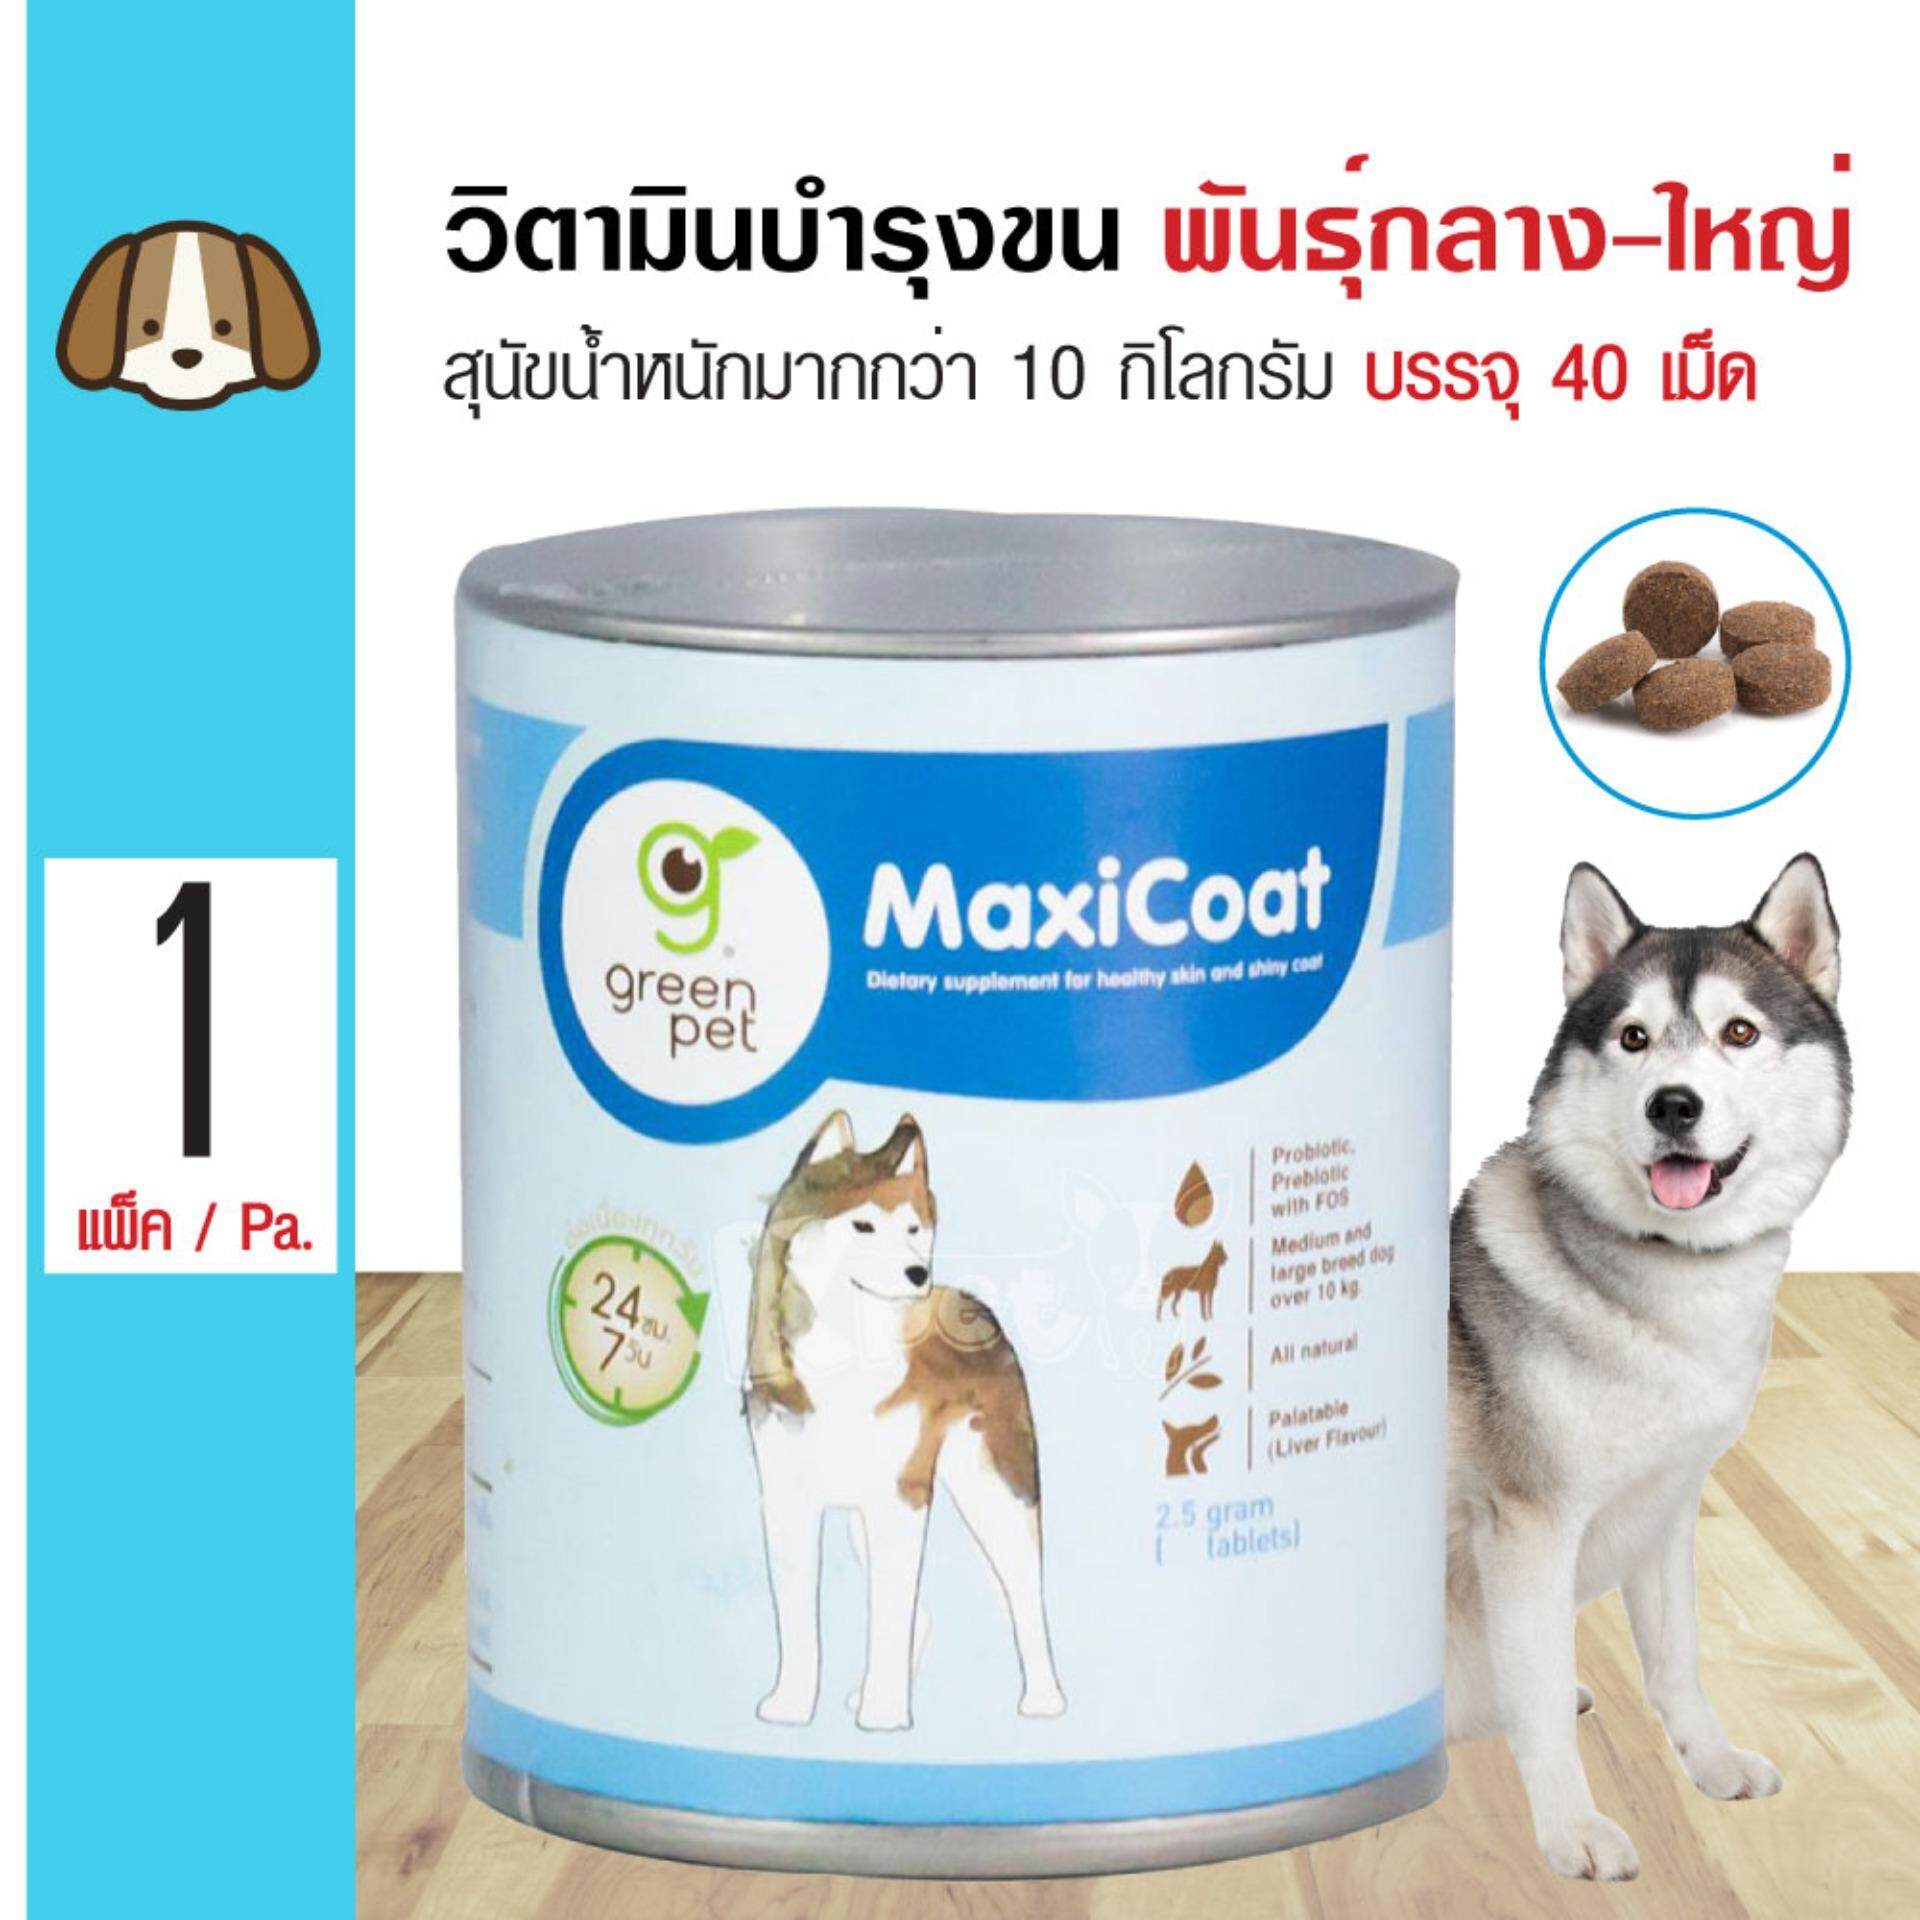 Maxicoat Dog อาหารเสริมวิตามินบำรุงขนและผิวหนัง ลดอาการขนร่วง สำหรับสุนัขพันธุ์กลาง-ใหญ่ น้ำหนักมากกว่า 10 กิโลกรัม (จำนวน 40 เม็ด/ กระปุก)